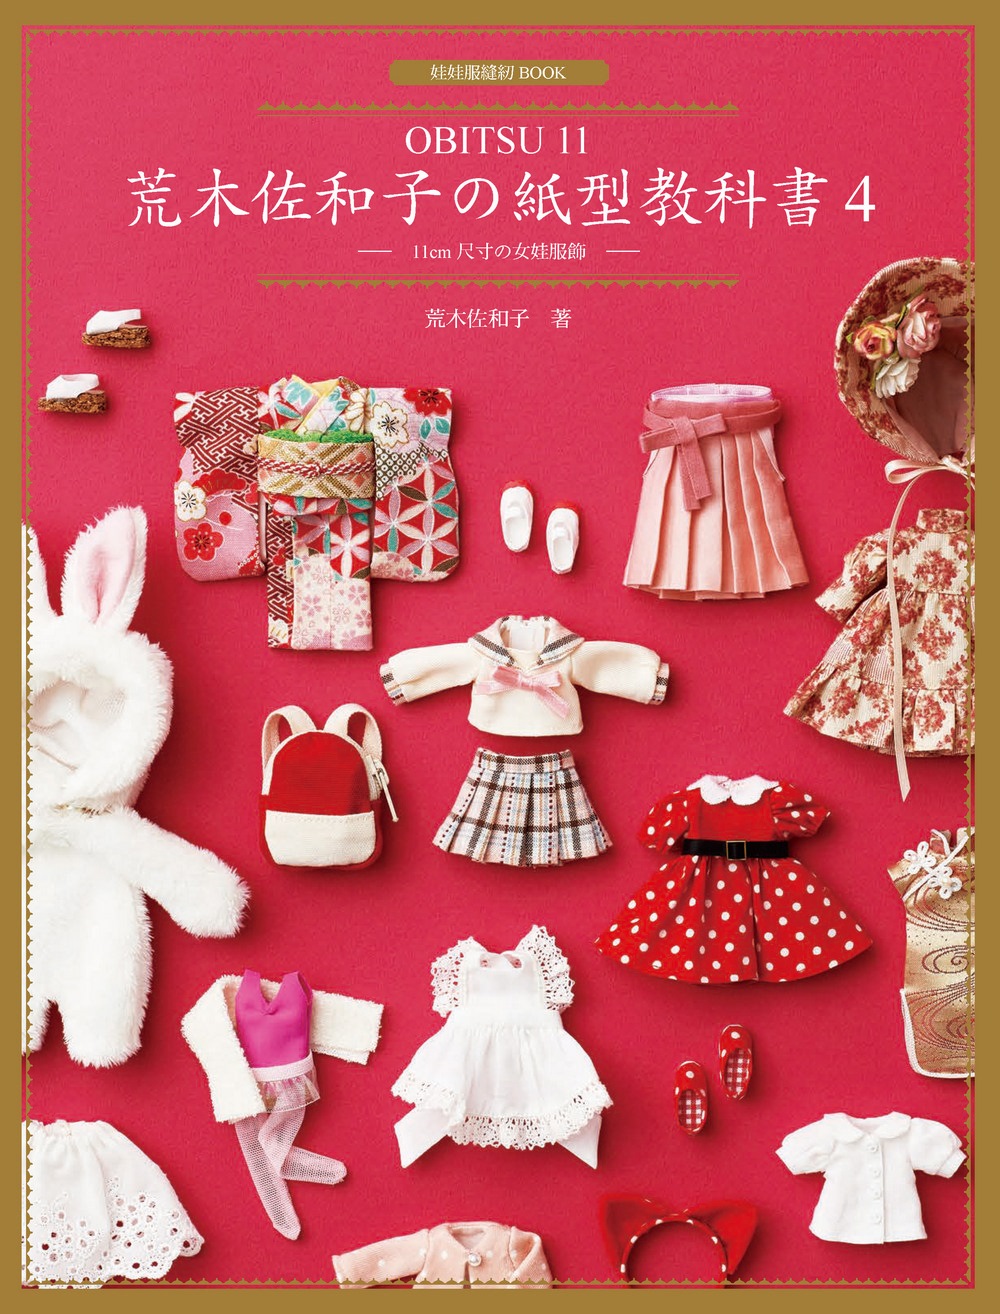 荒木佐和子の紙型教科書4：「OBITSU 11」11cm 尺寸の女娃服飾